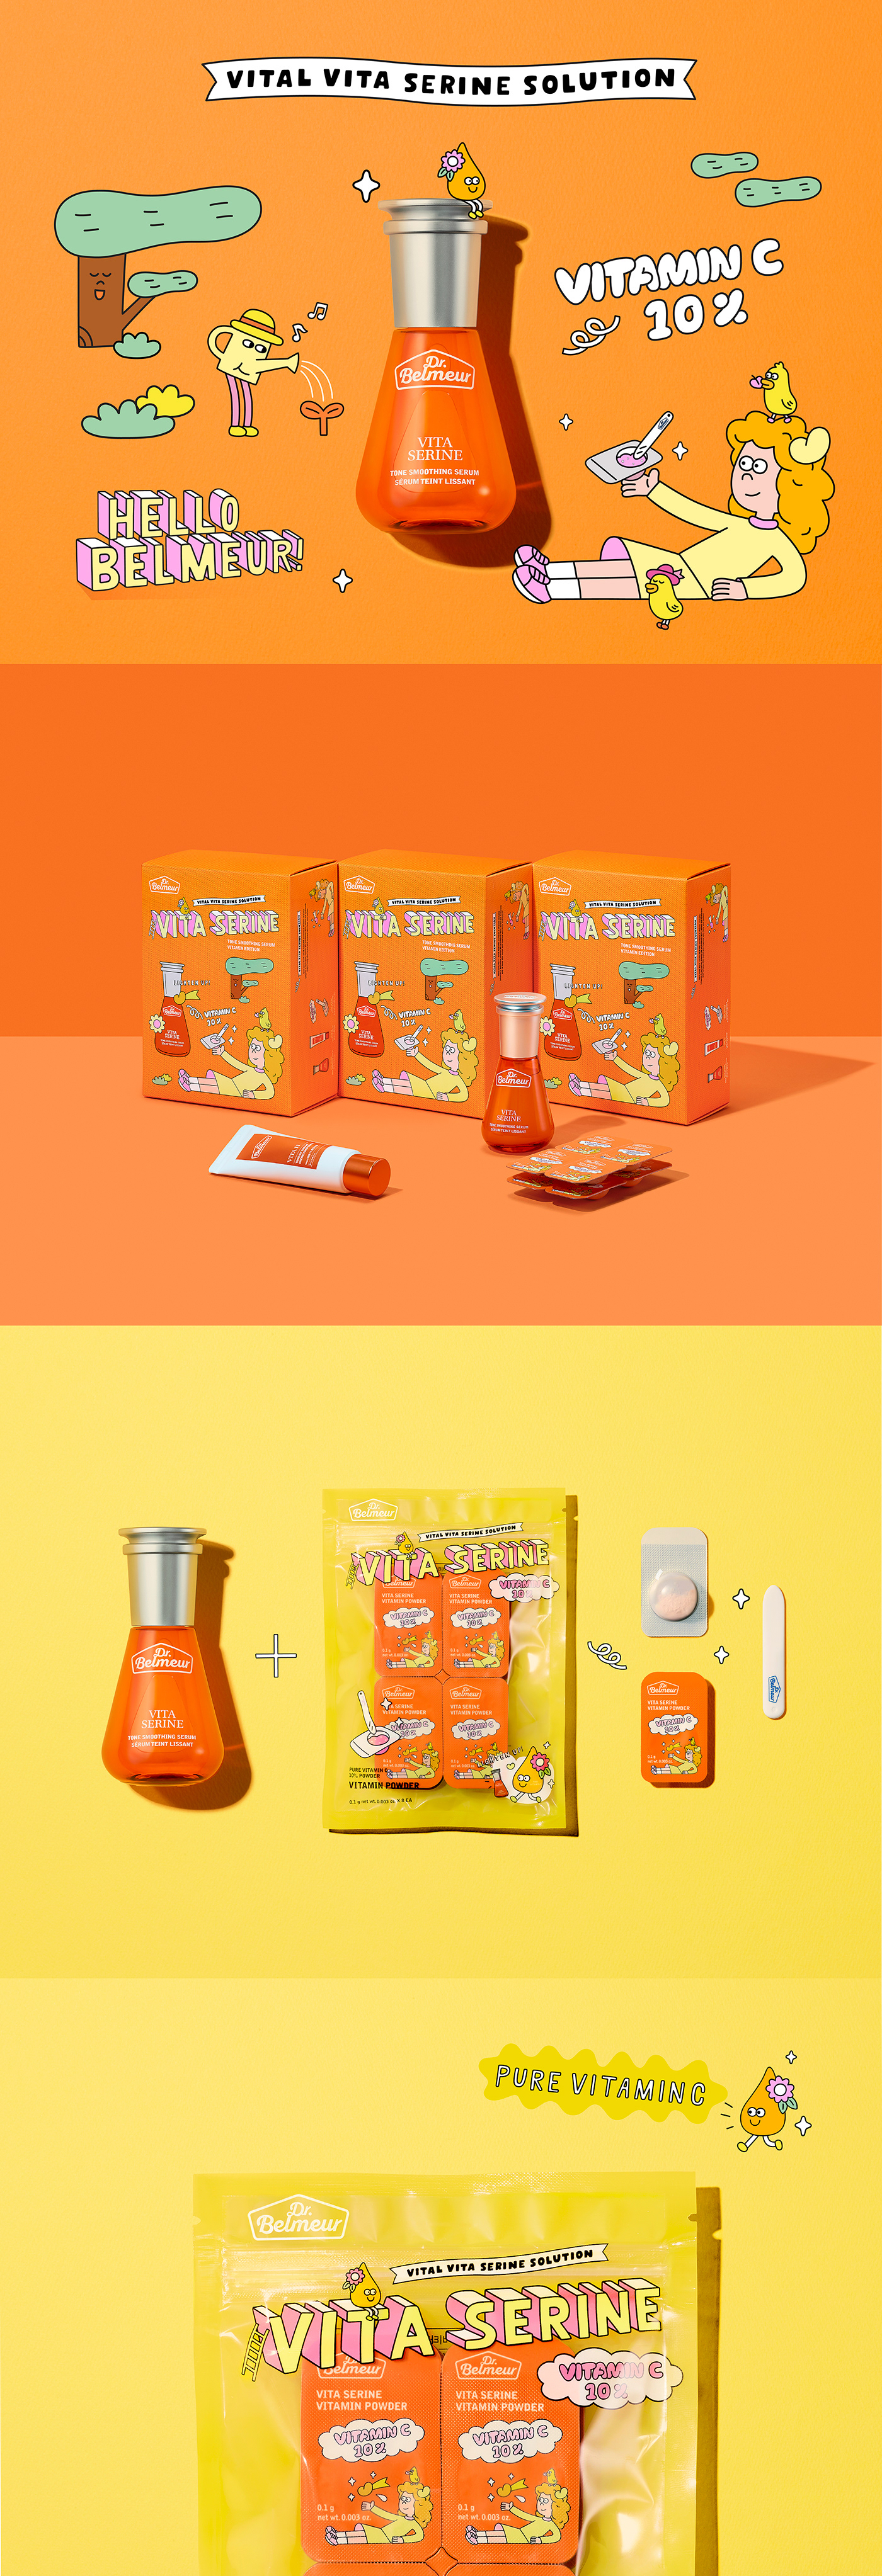 Dr.belmeur edition graphic ILLUSTRATION  orange package pouch powder The Face Shop vitamin